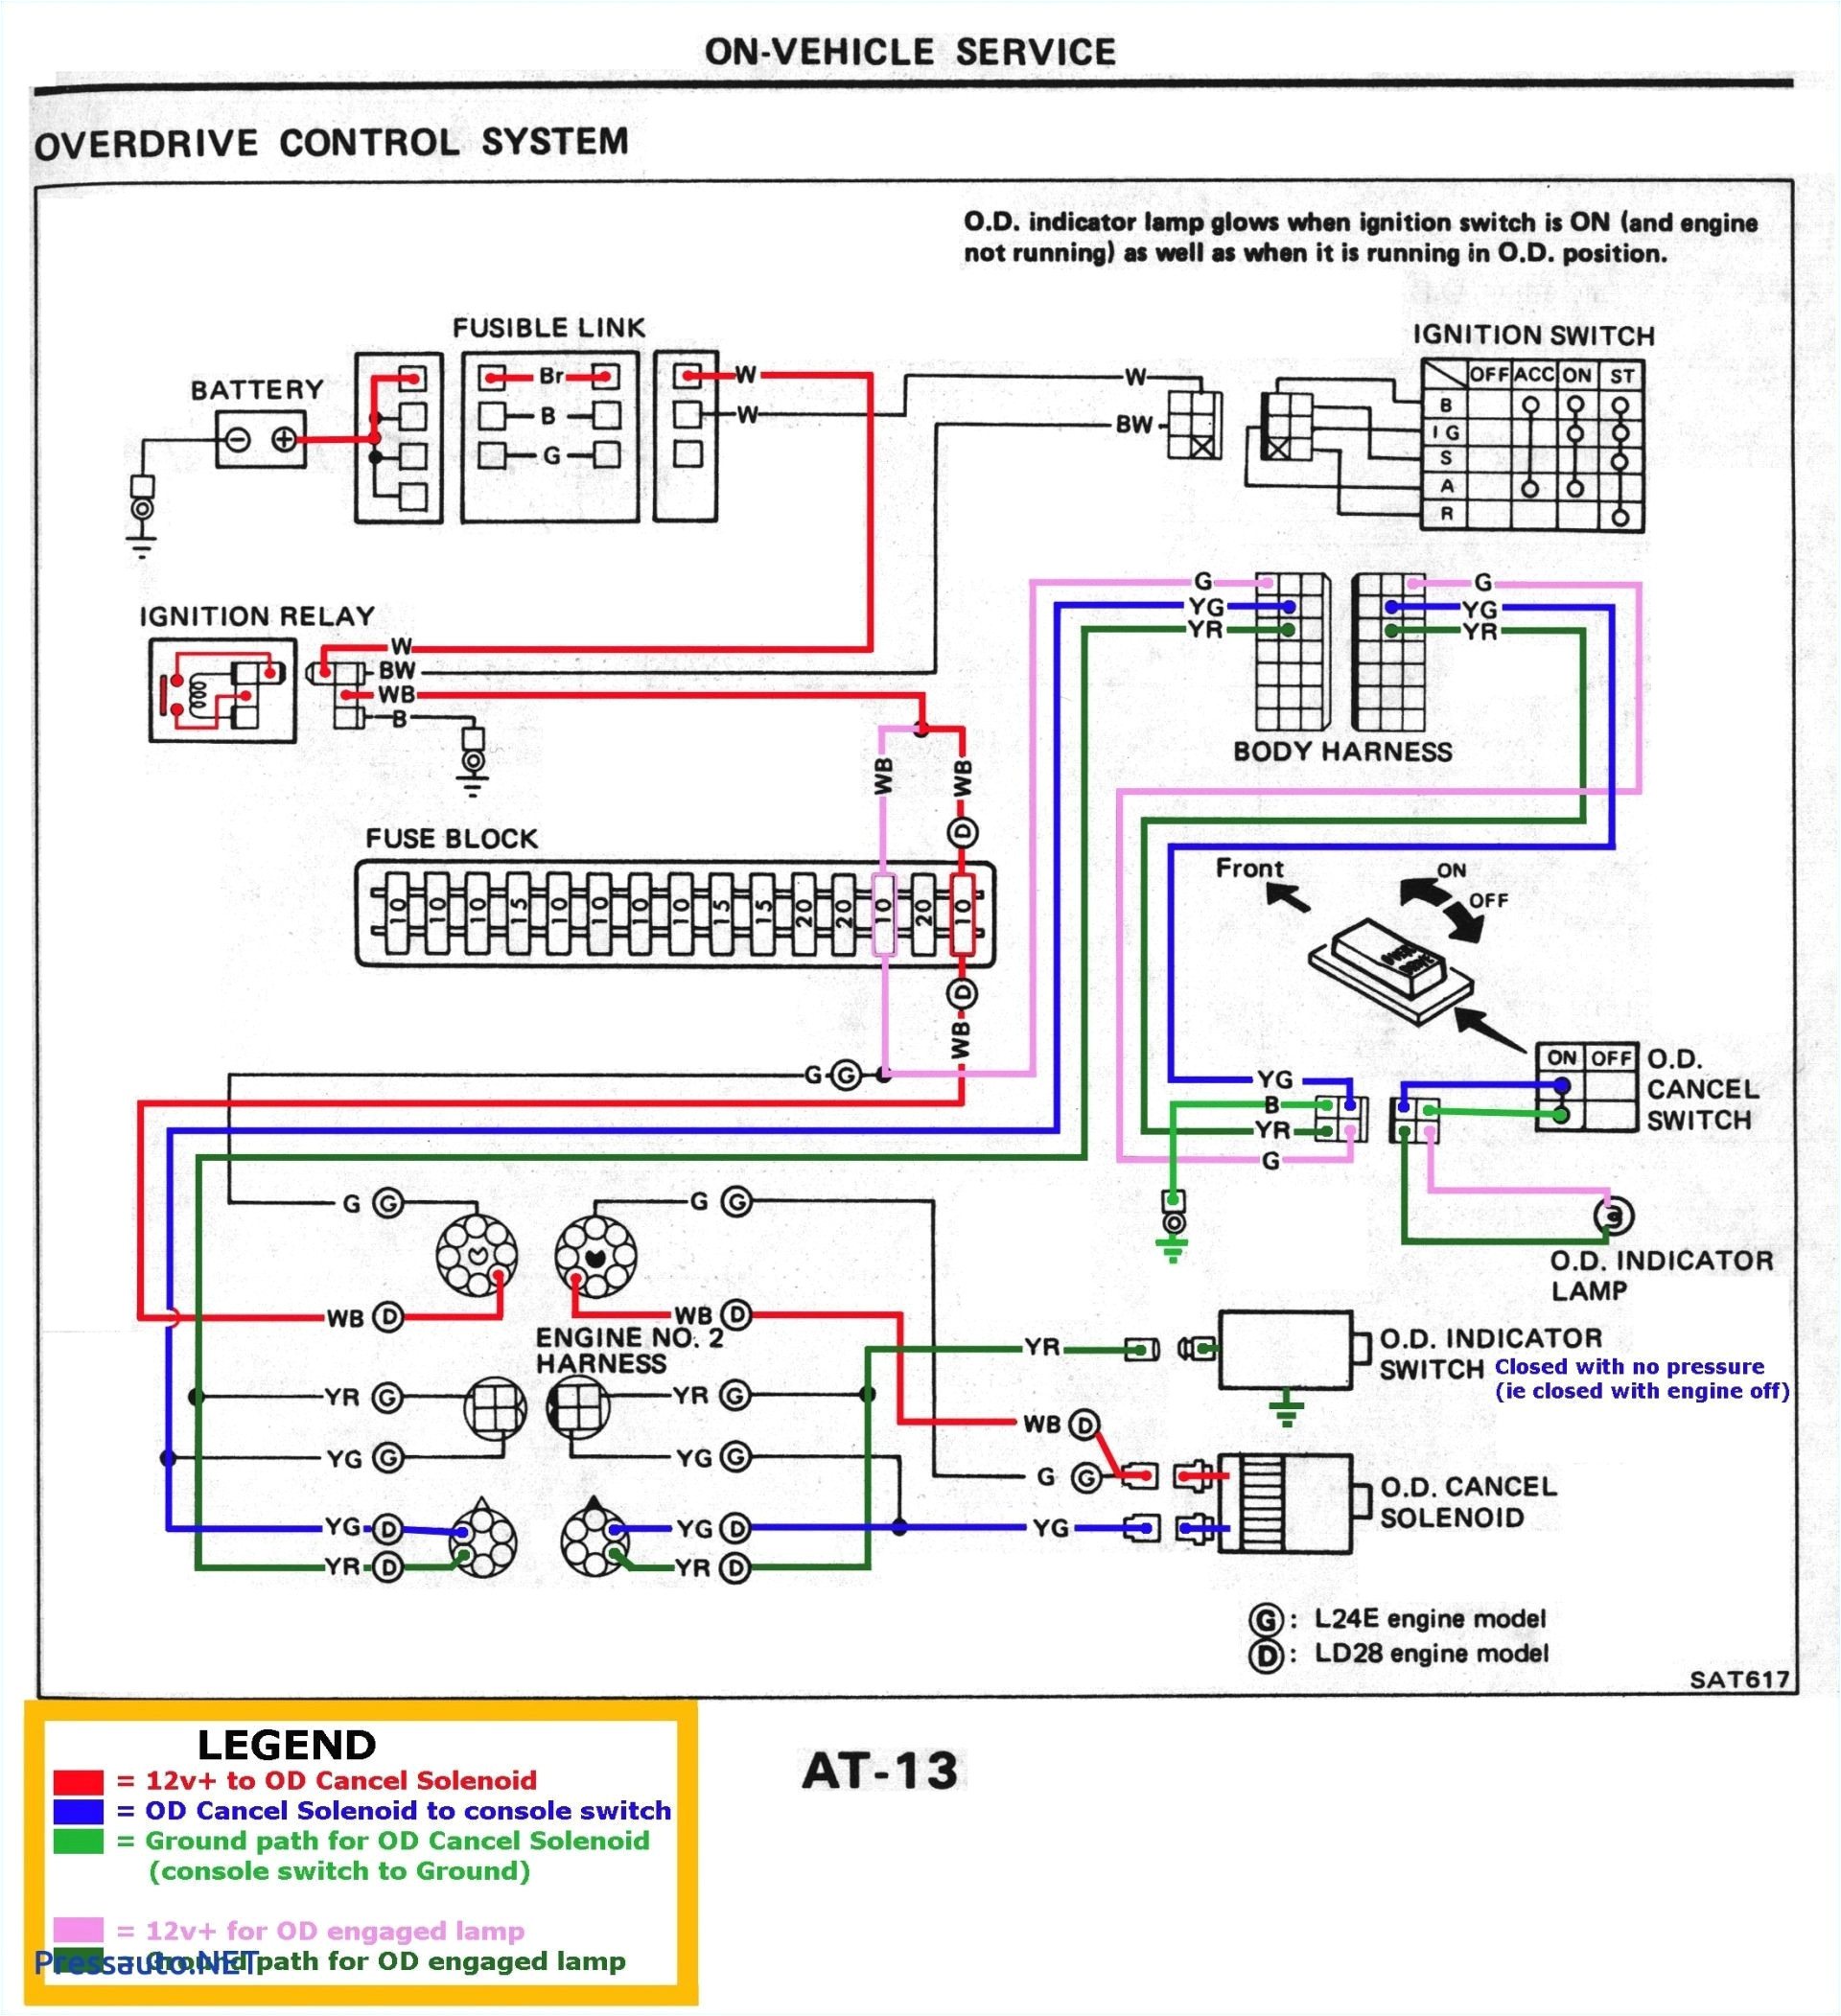 Parrot Ck3100 Wiring Diagram Parrot Ck3100 Wiring Diagram Wire Diagram